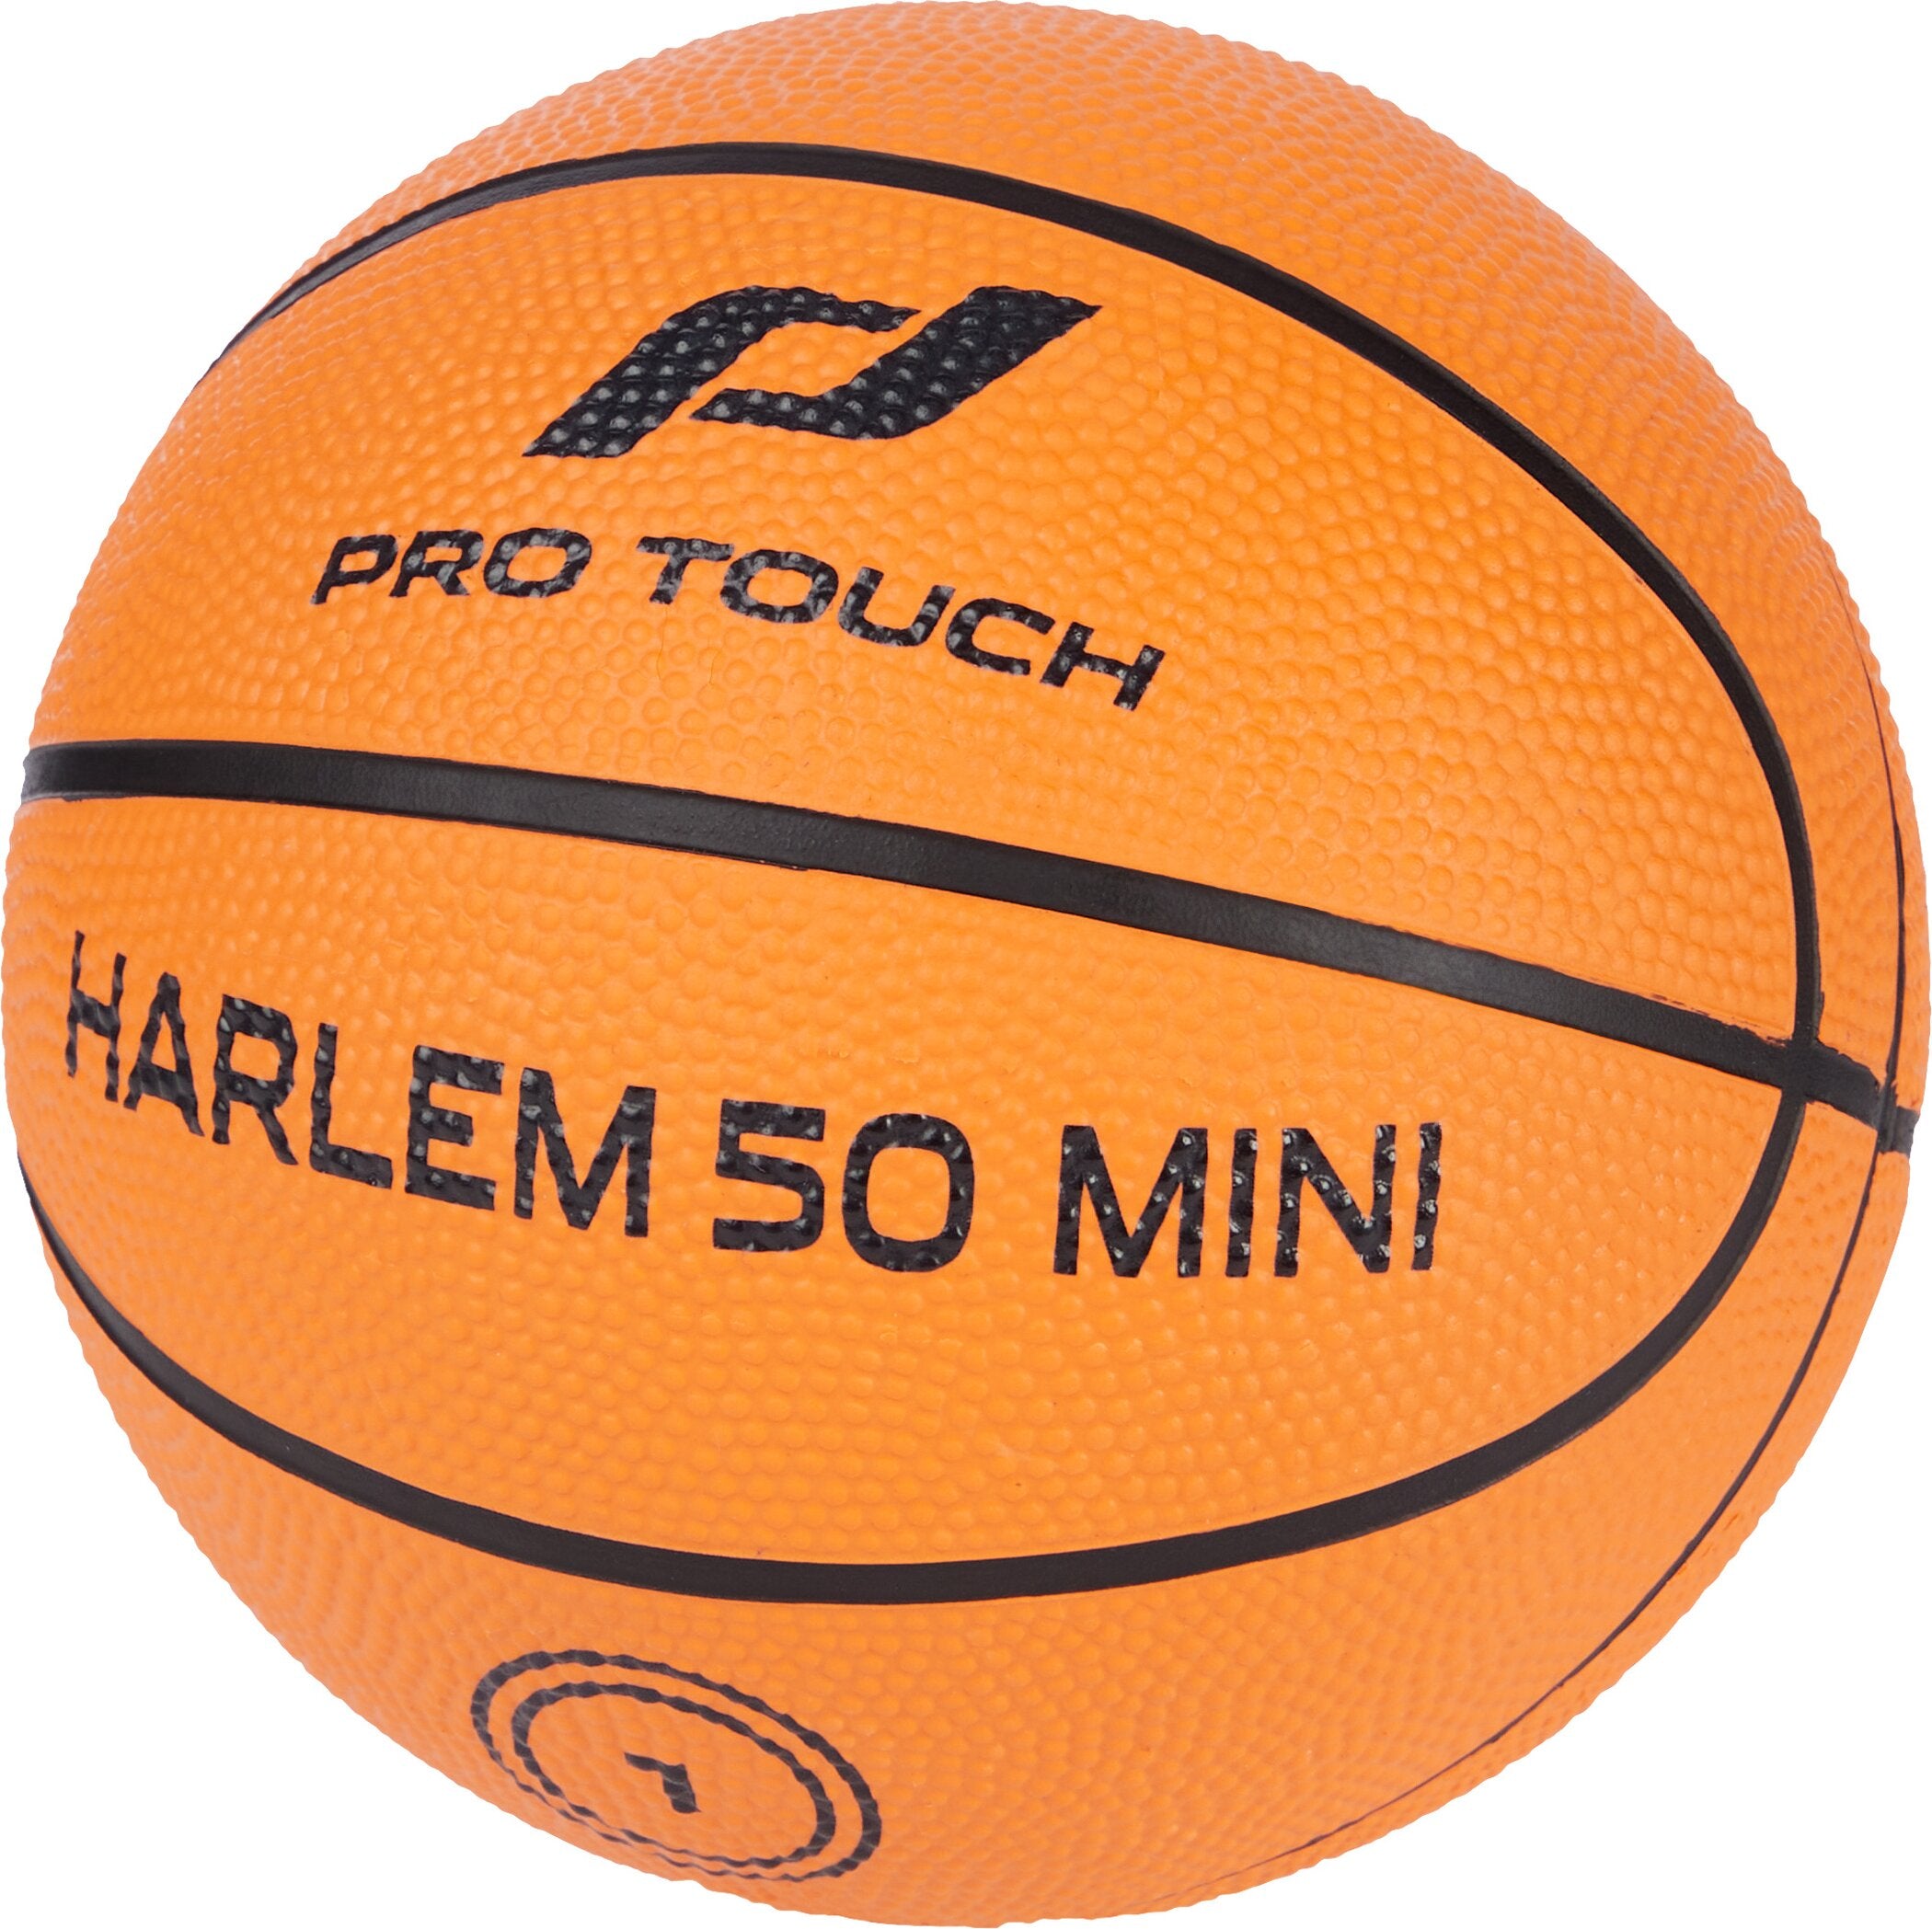 Mini-Ball Harlem 50 Mini